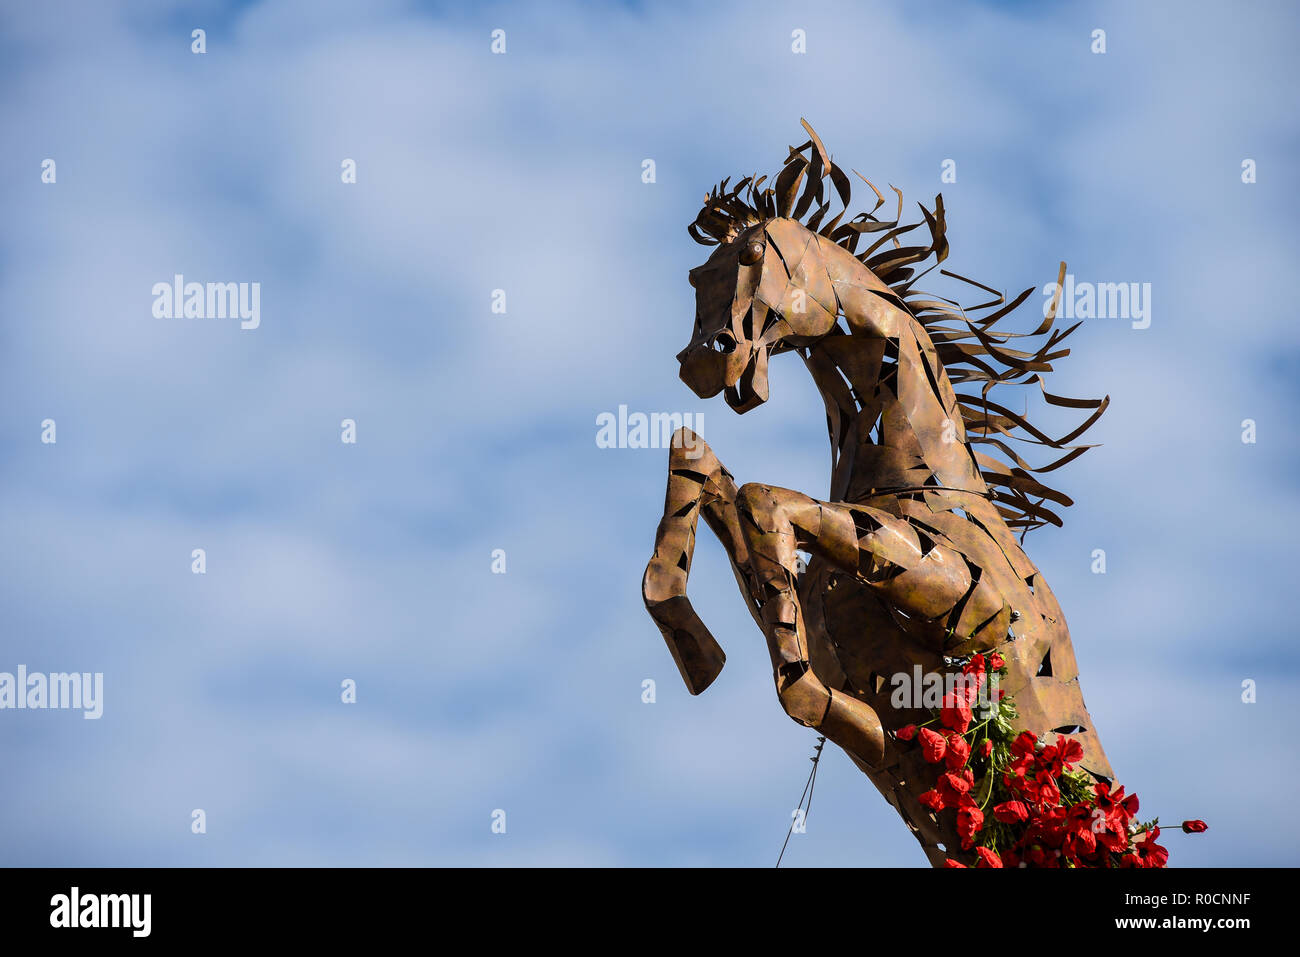 Erinnerung Armistice Day hundertste Todestag Pferd mit roter Mohn wächst heran. Roslin Beach Hotel erster Weltkrieg, Weltkrieg Memorial Anzeige Stockfoto